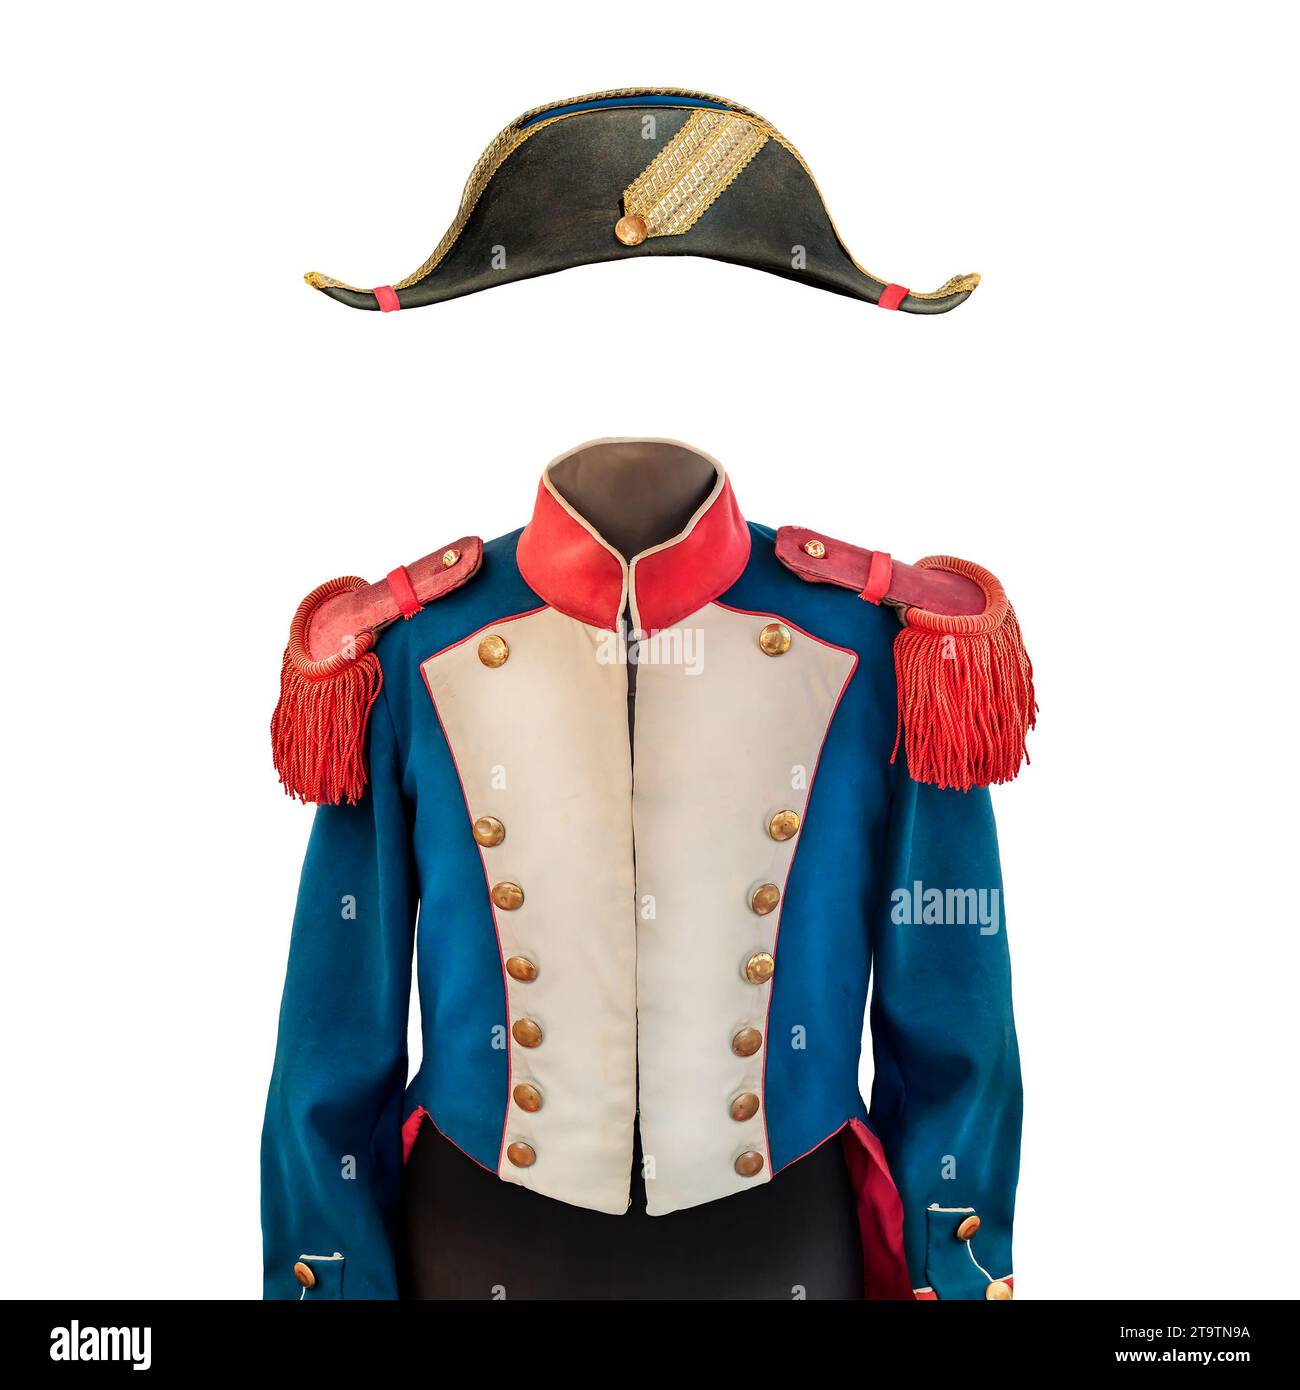 Costume Napoleone d'epoca con cappello isolato su sfondo bianco Foto Stock